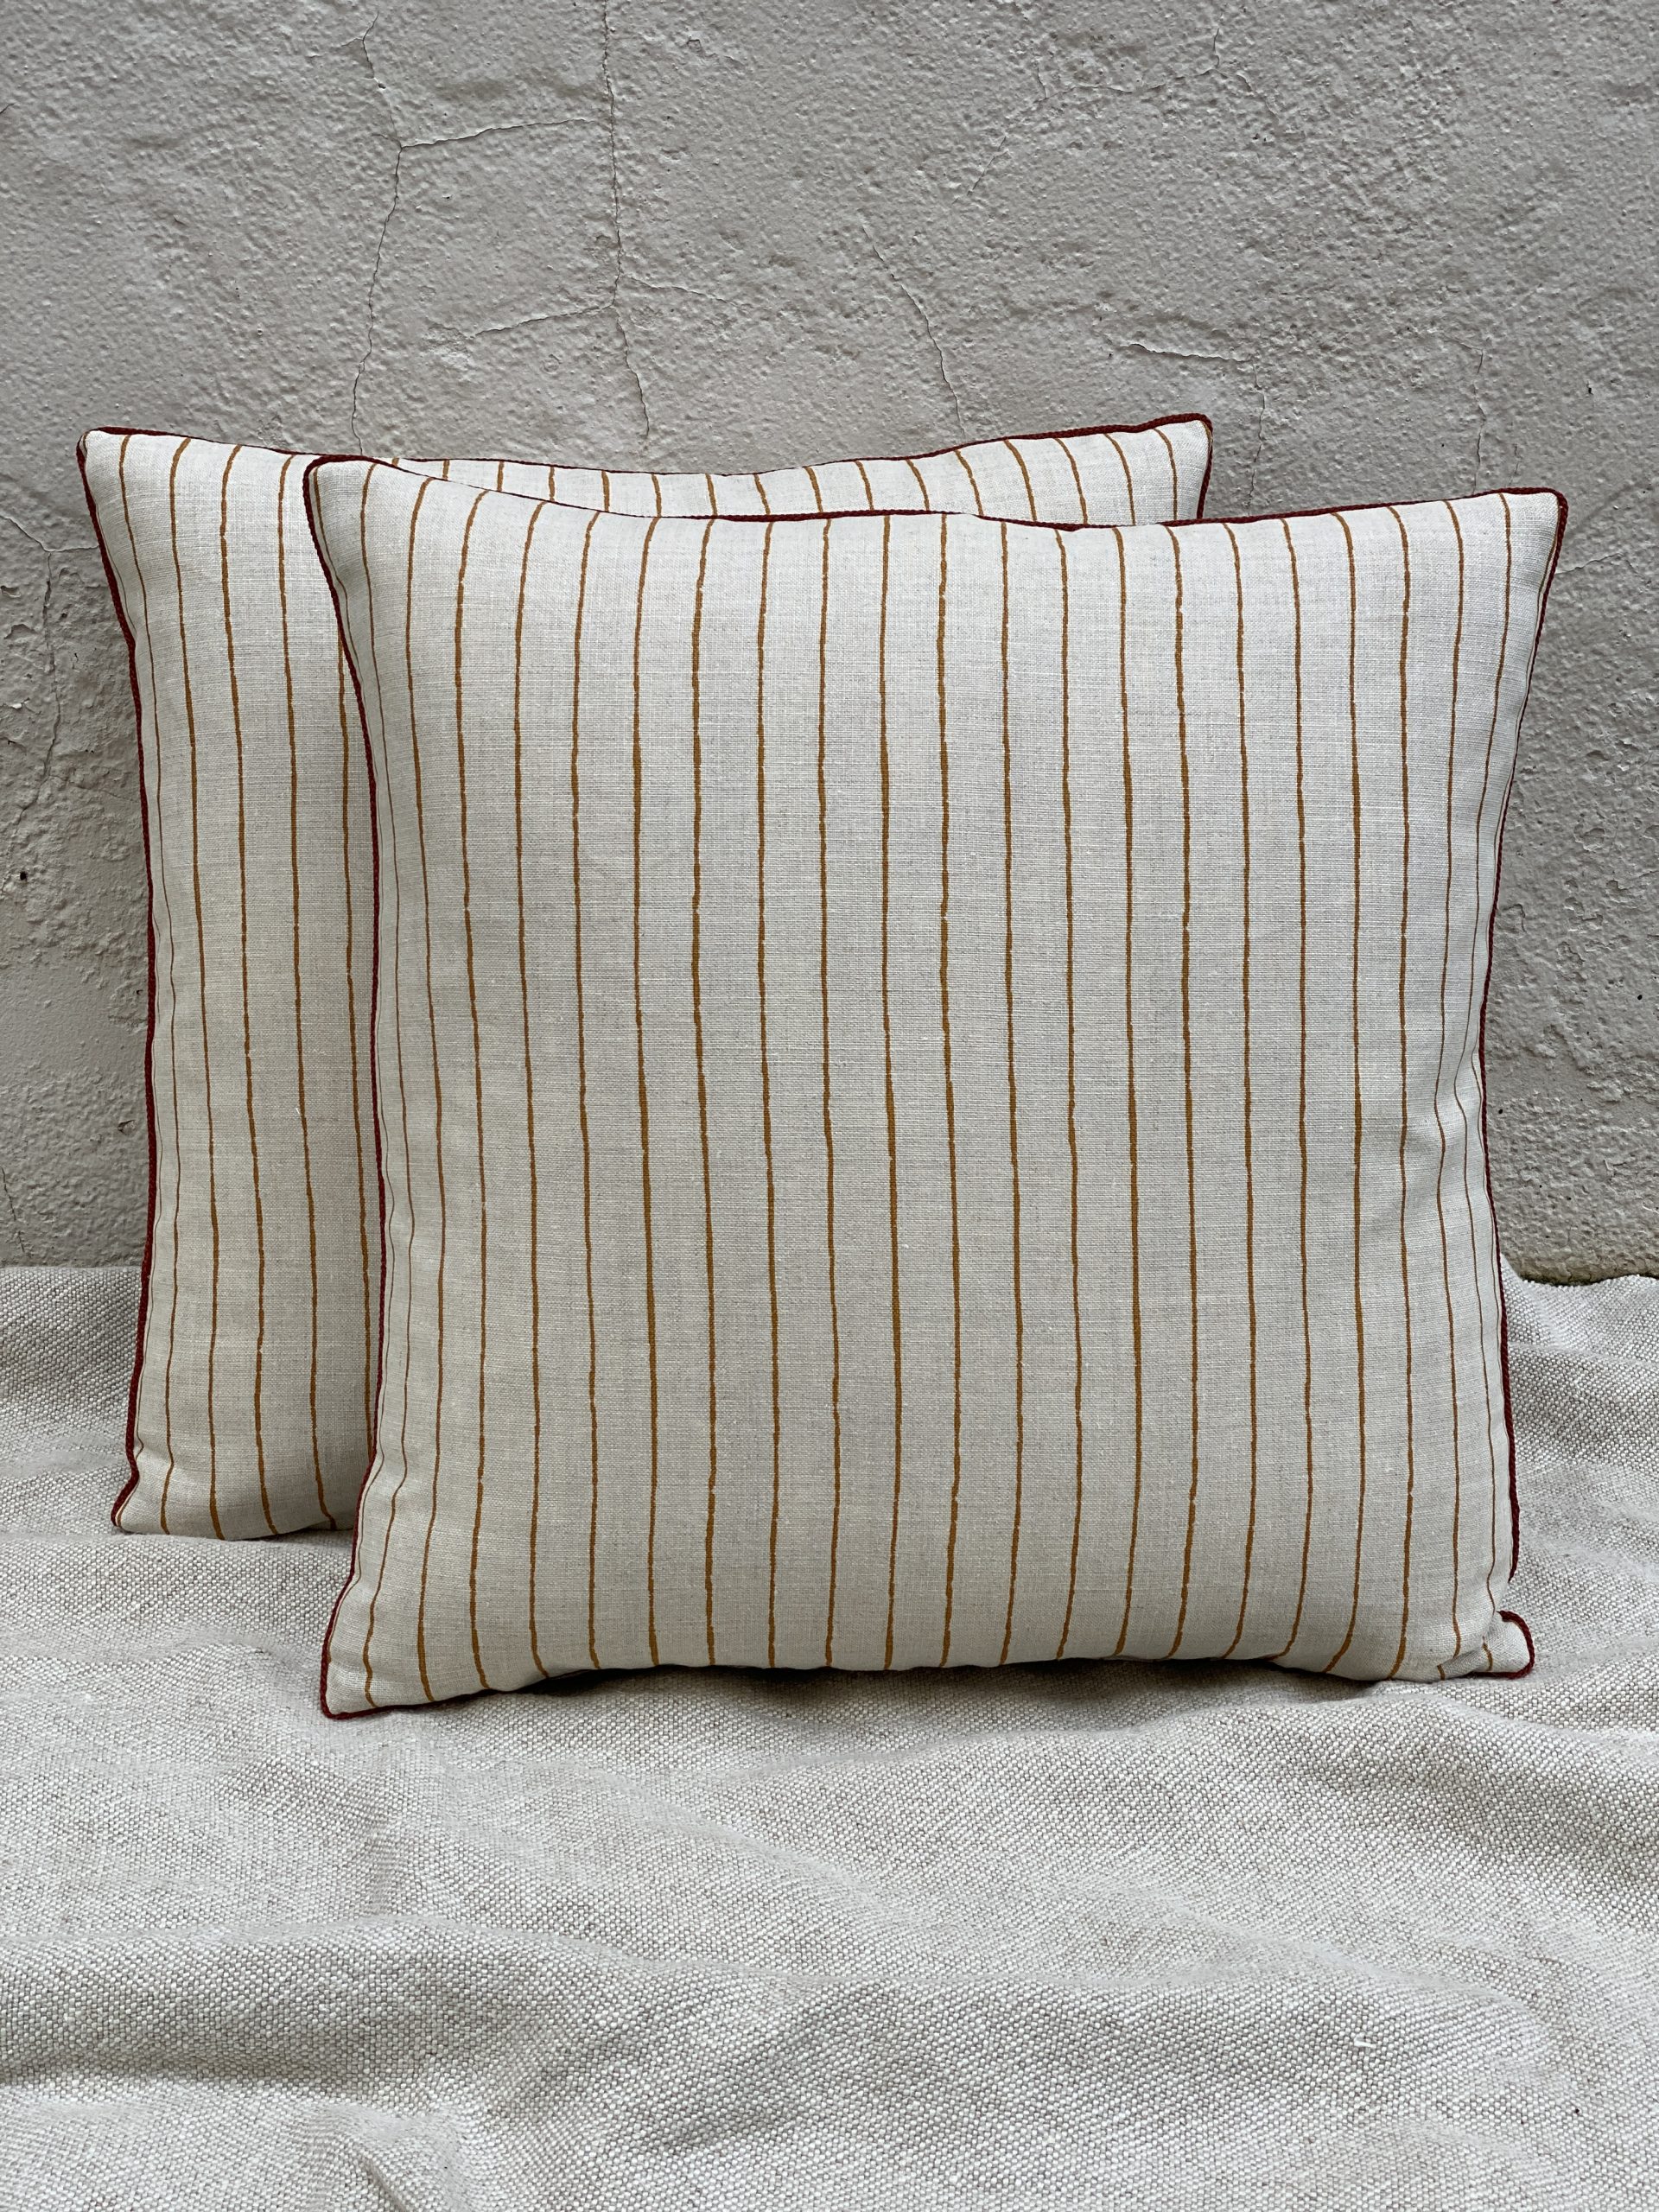 Stripe Pillows